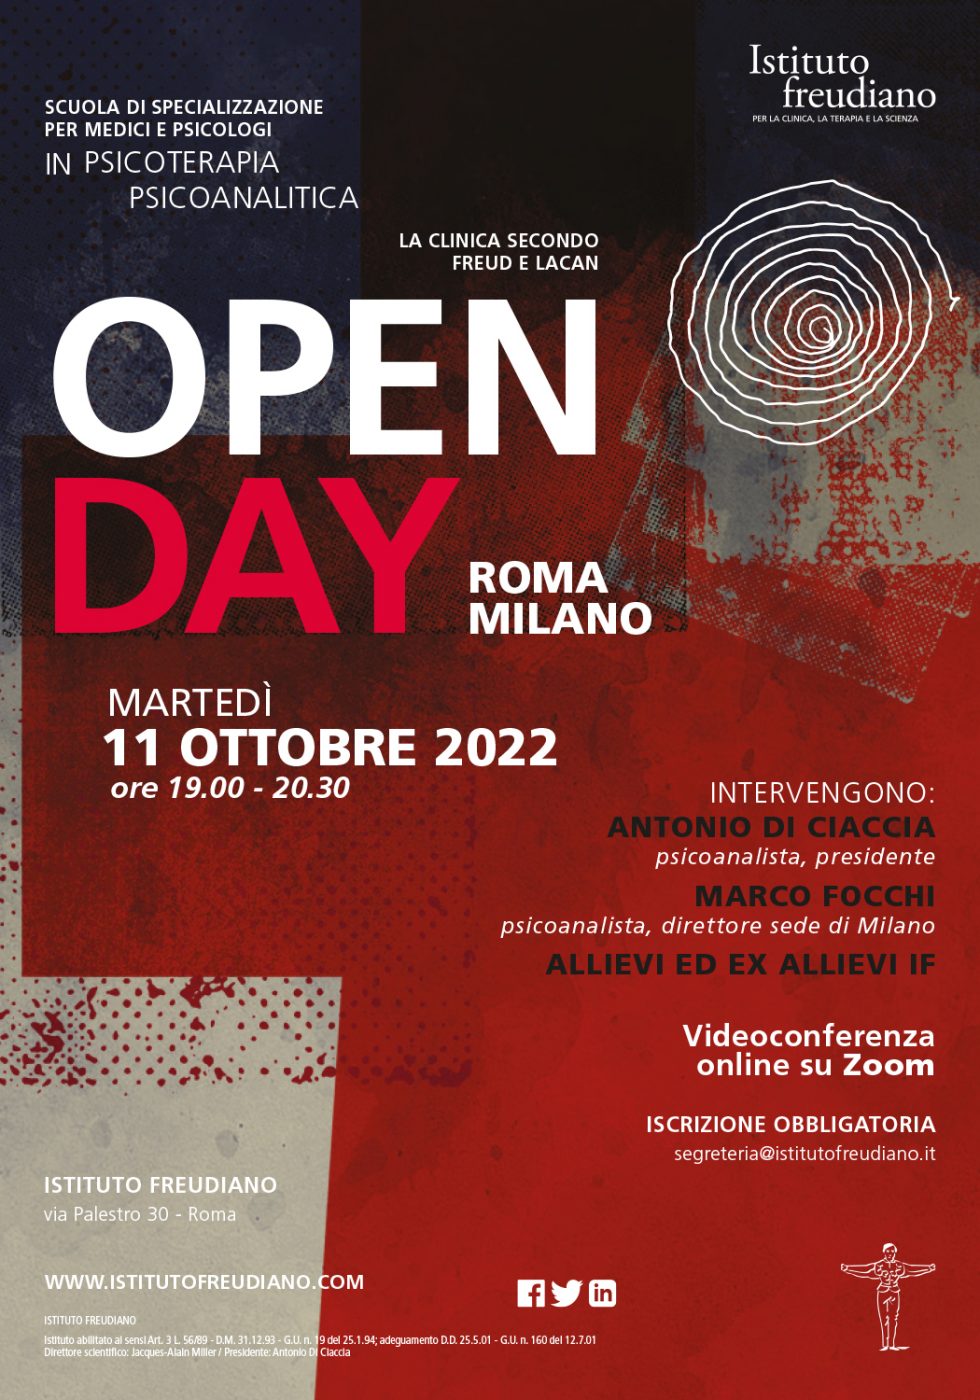 Open day Istituto freudiano Milano 11 ottobre 2022